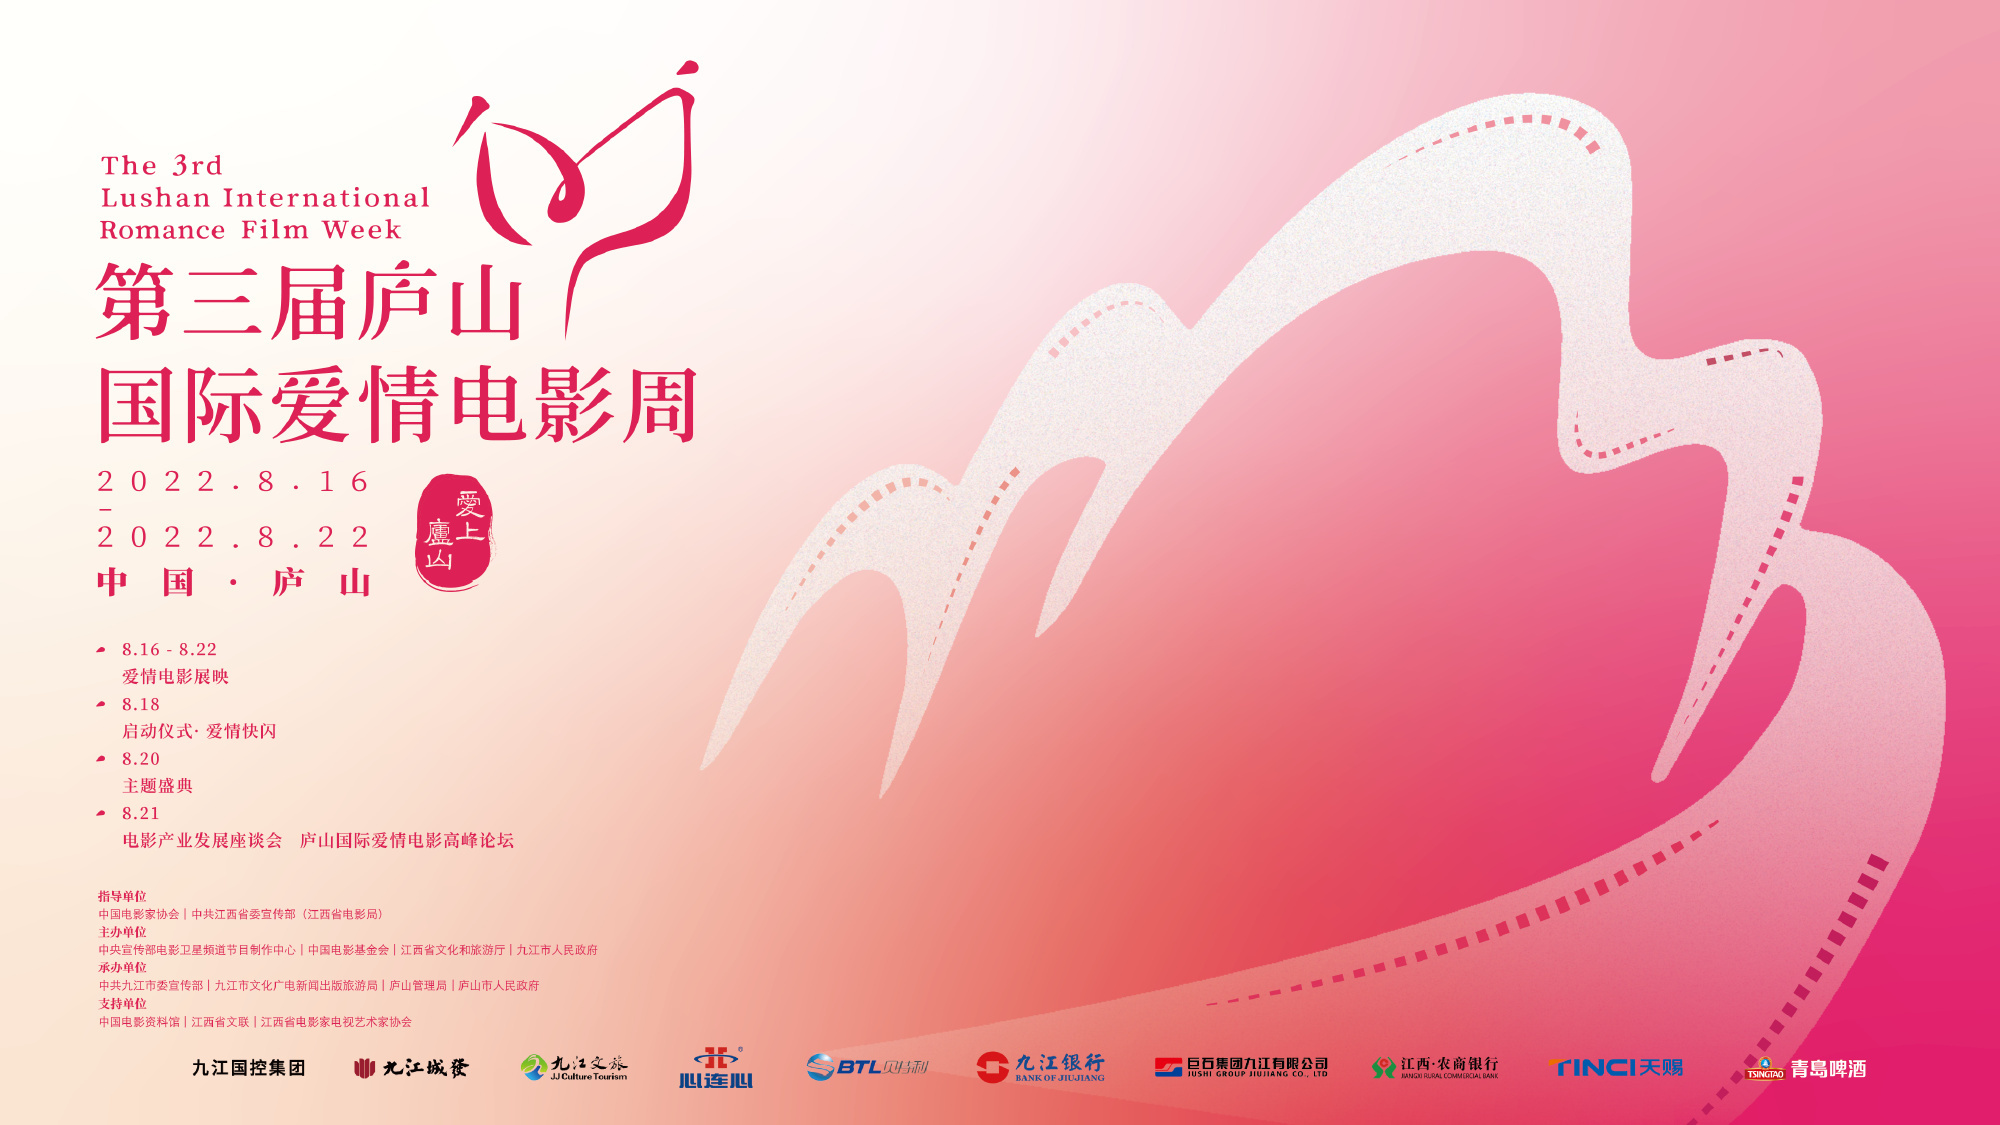 第三届庐山国际爱情电影周 主视觉LOGO海报公布